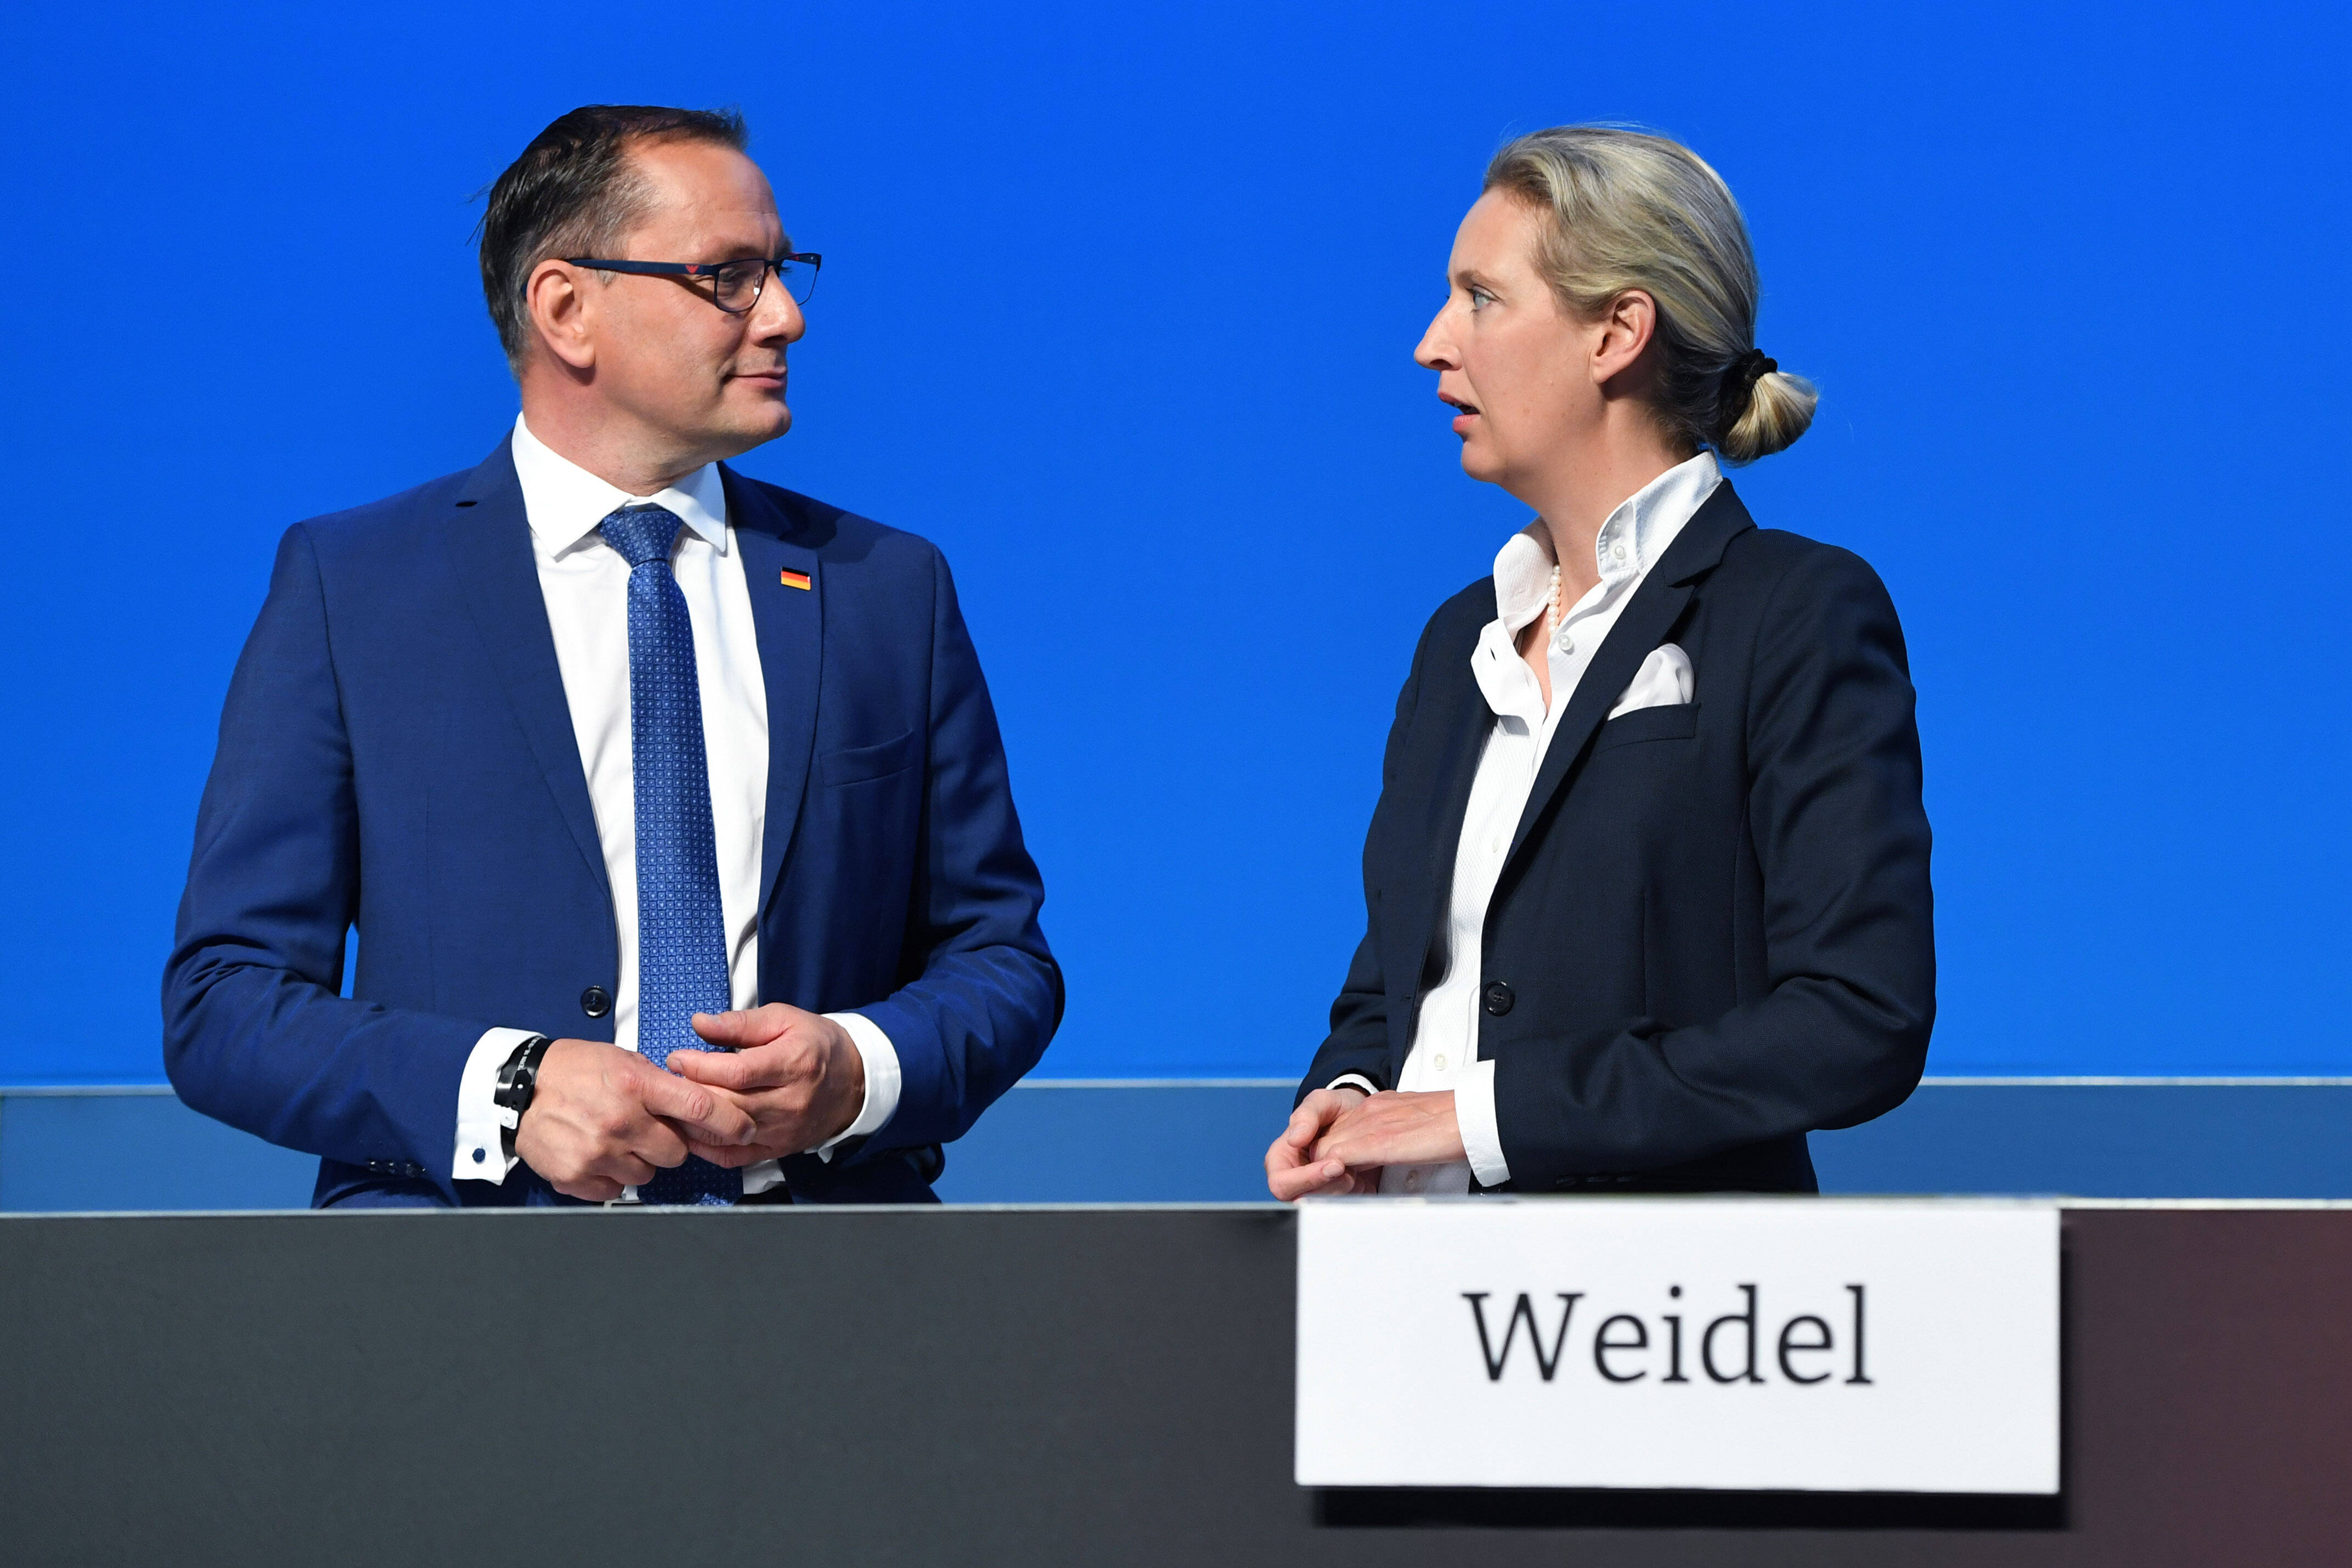 Neue Bundesspitze Chrupalla und Weidel: Beide stehen für einen nach rechts hin offenen Kurs der AfD.